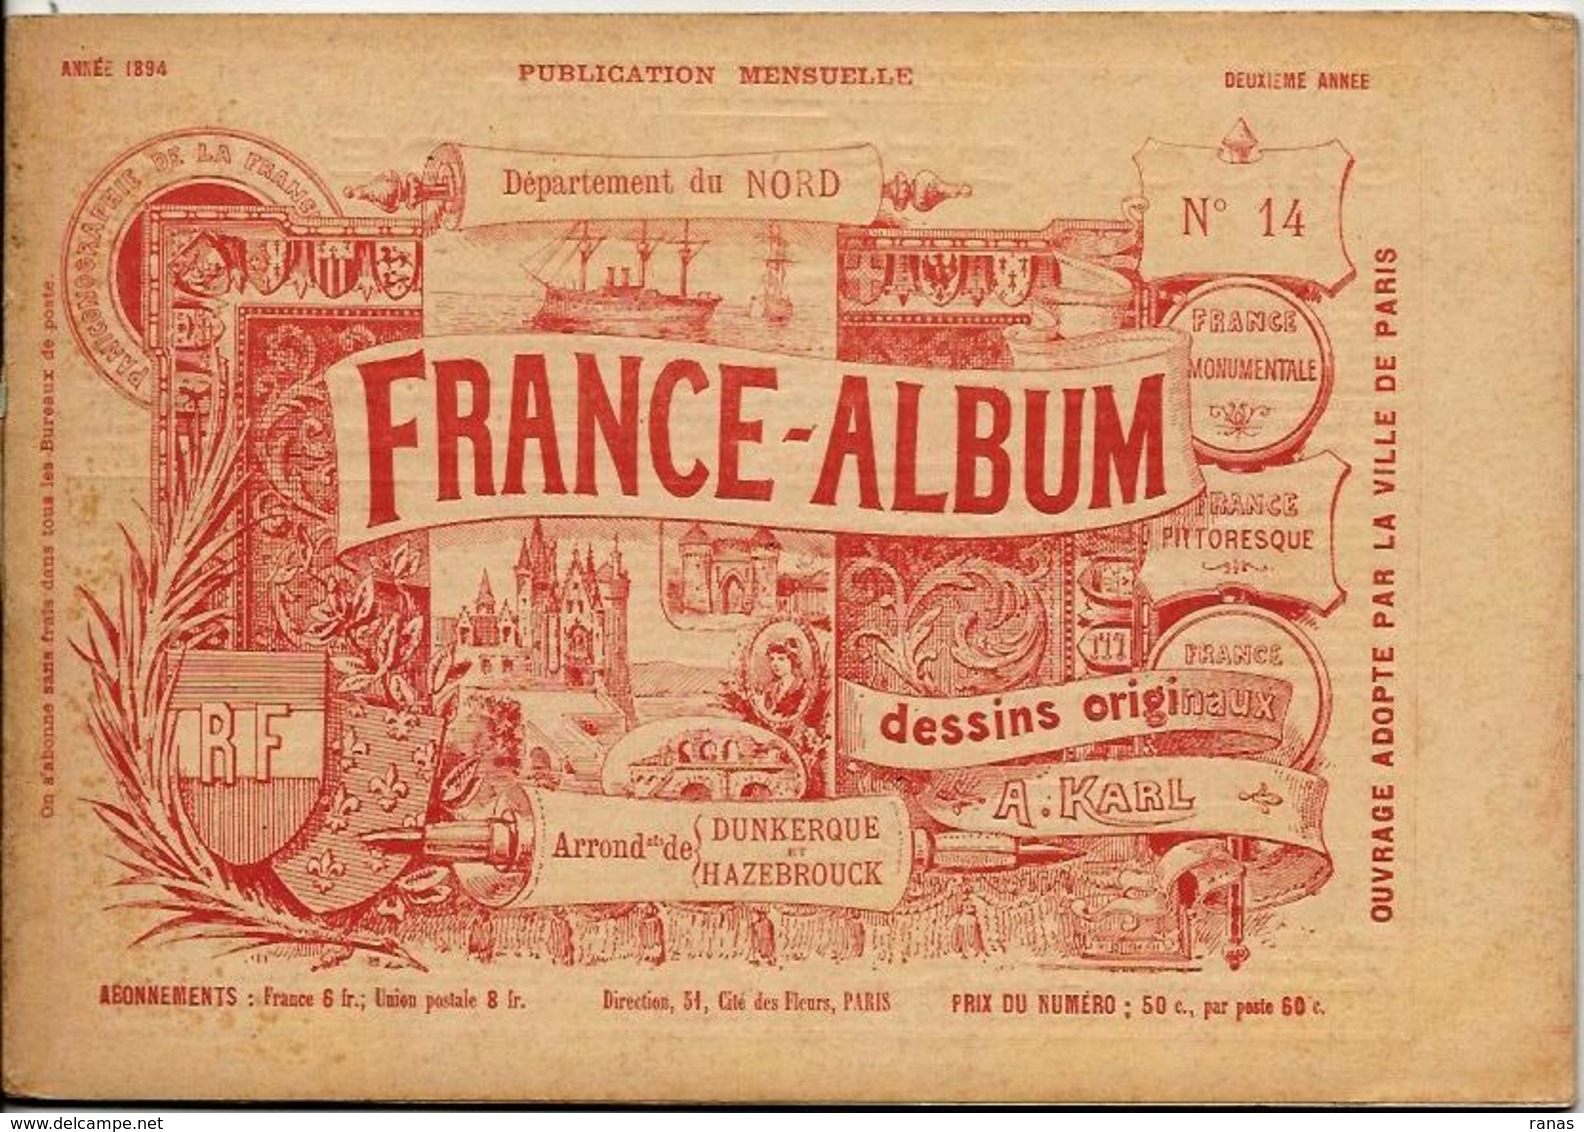 NORD 59 France Album De A. KARL, Carte Gravures Texte Publicités 1894 - Reiseprospekte